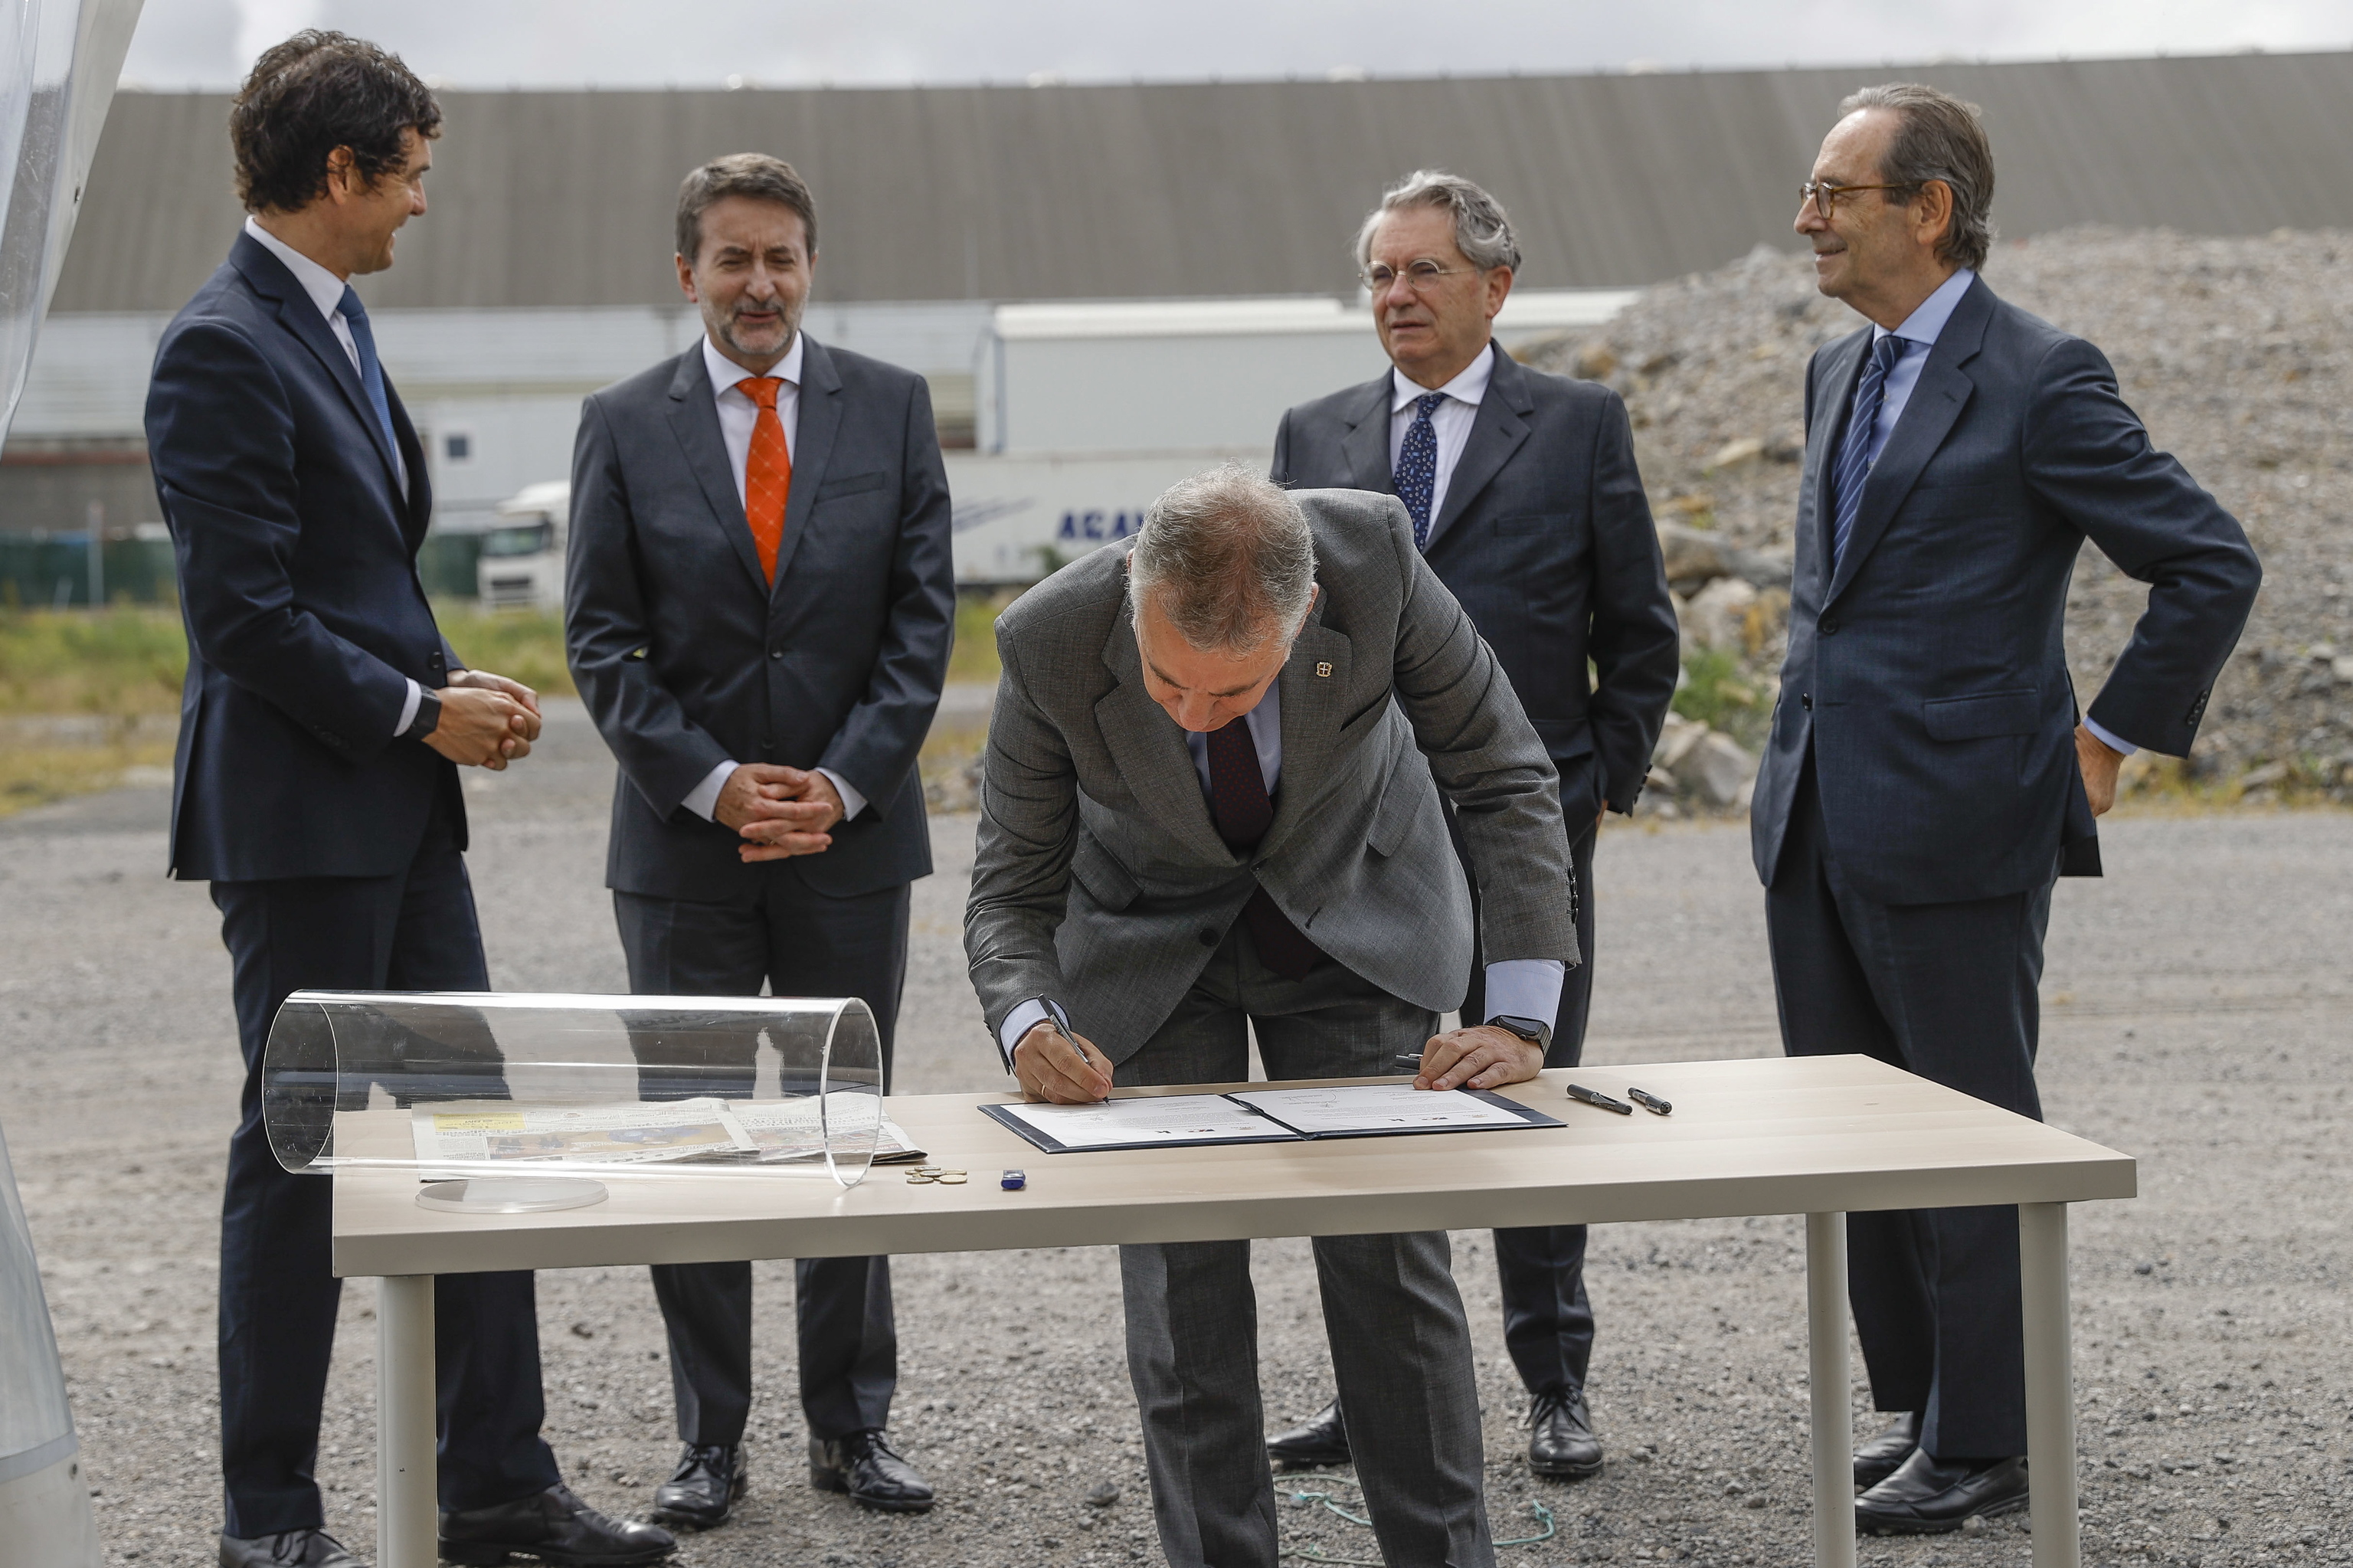 El lehendakari firma un documento en la colocación de la primera piedra de la nueva planta ante representantes de Repsol, Petronor y Kutxabank.